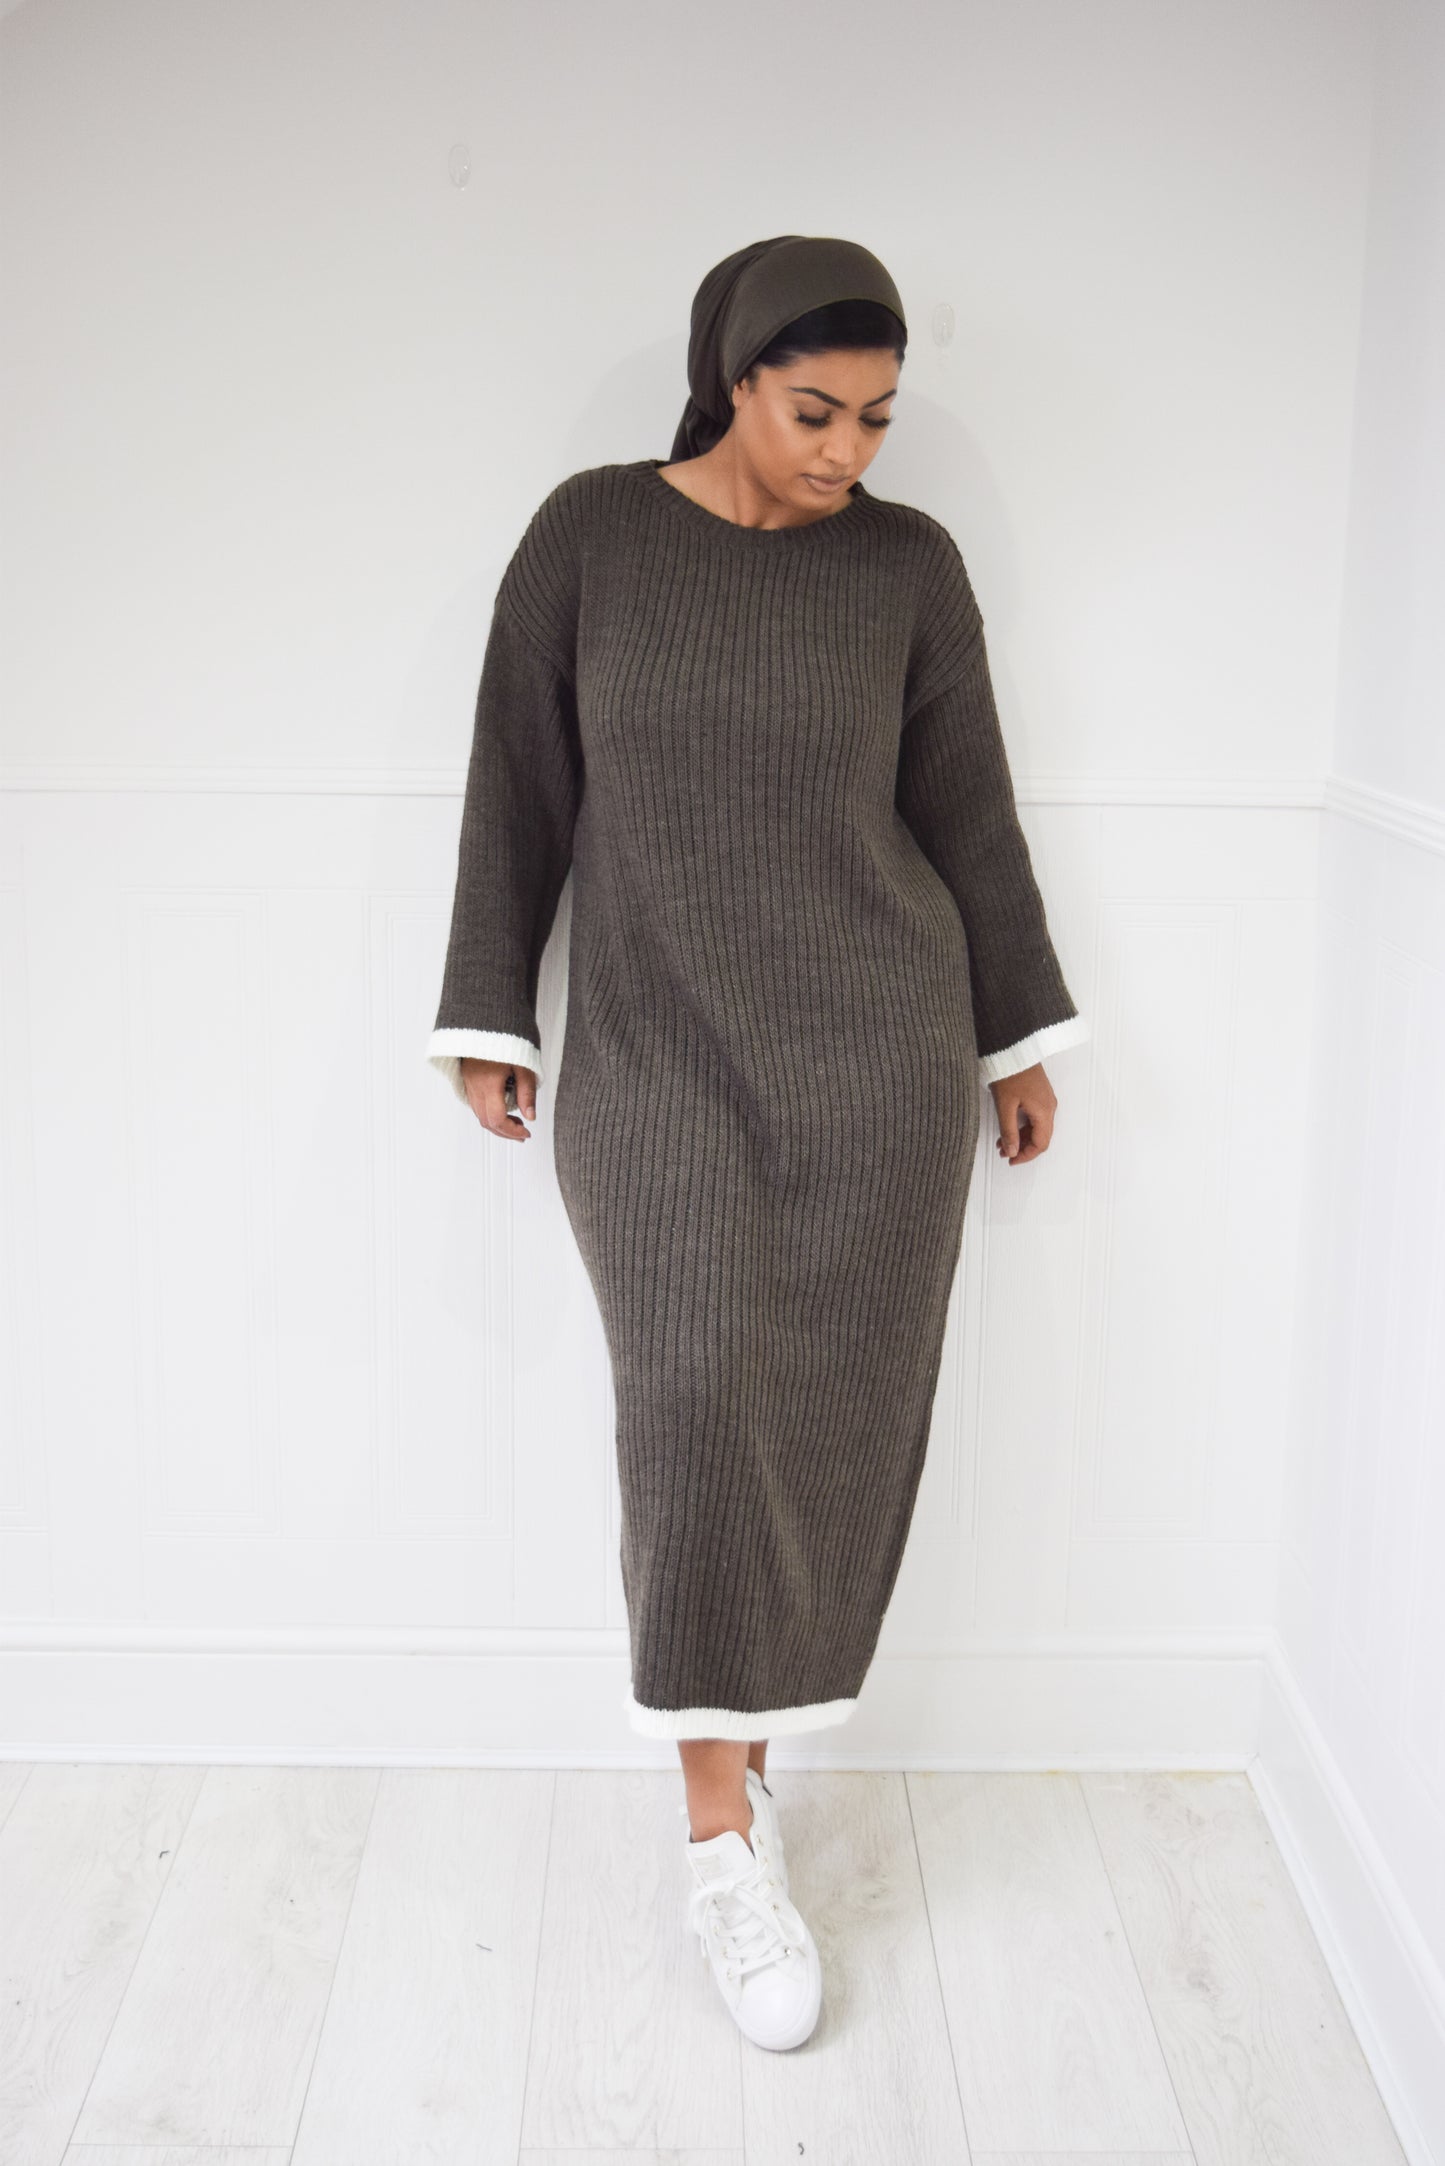 Winter knit dress with Trim Khaki Grey